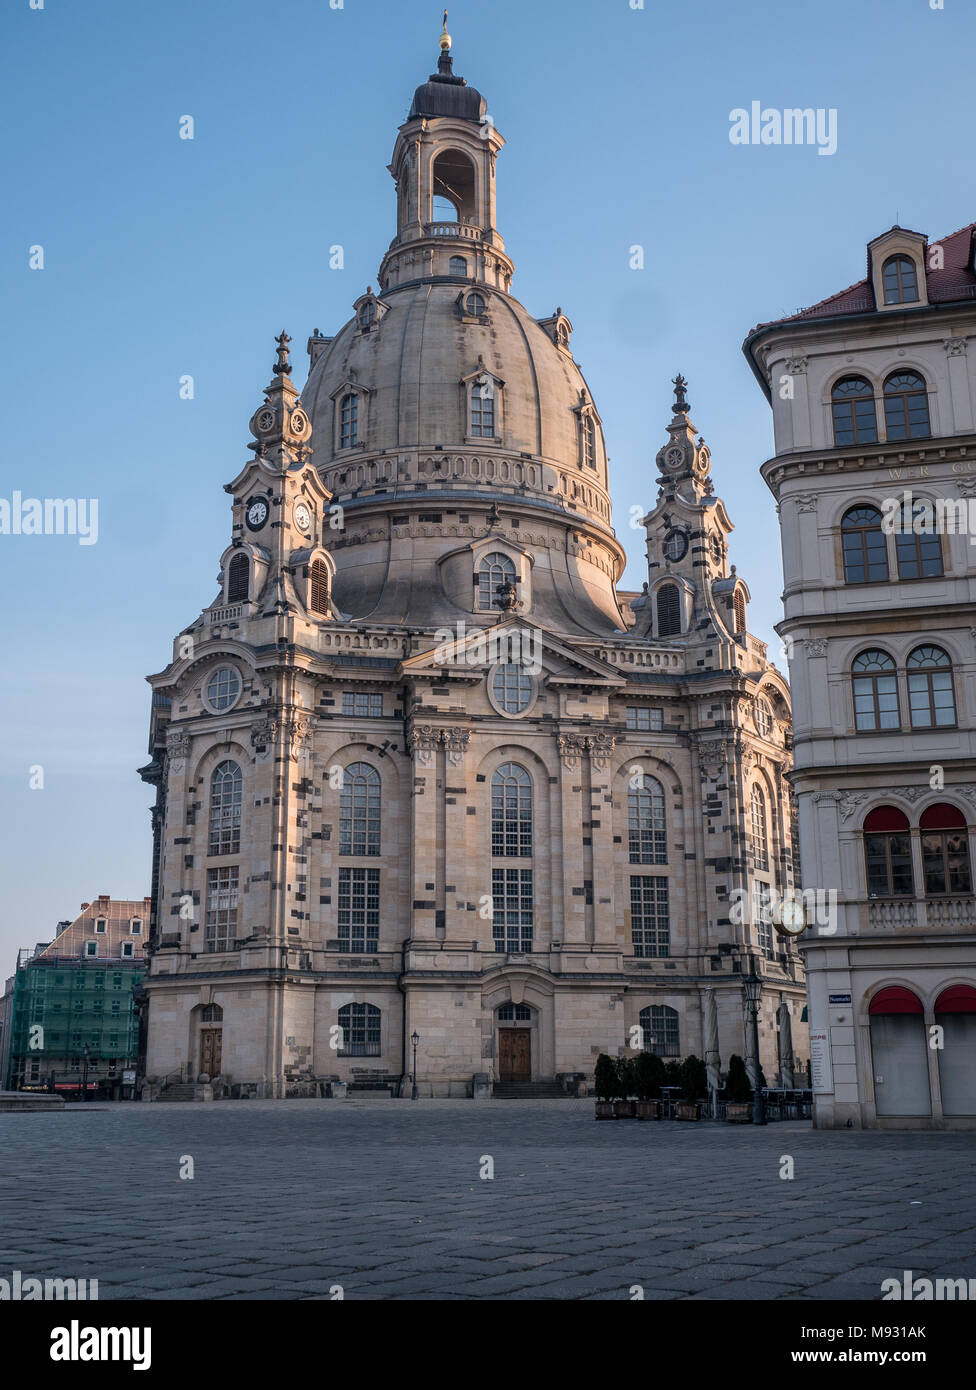 Der Muttergottes Kirche/Kirche Unserer Lieben Frau (Frauenkirche) und Luther statue am frühen Morgen, Dresden, Sachsen, Deutschland Stockfoto